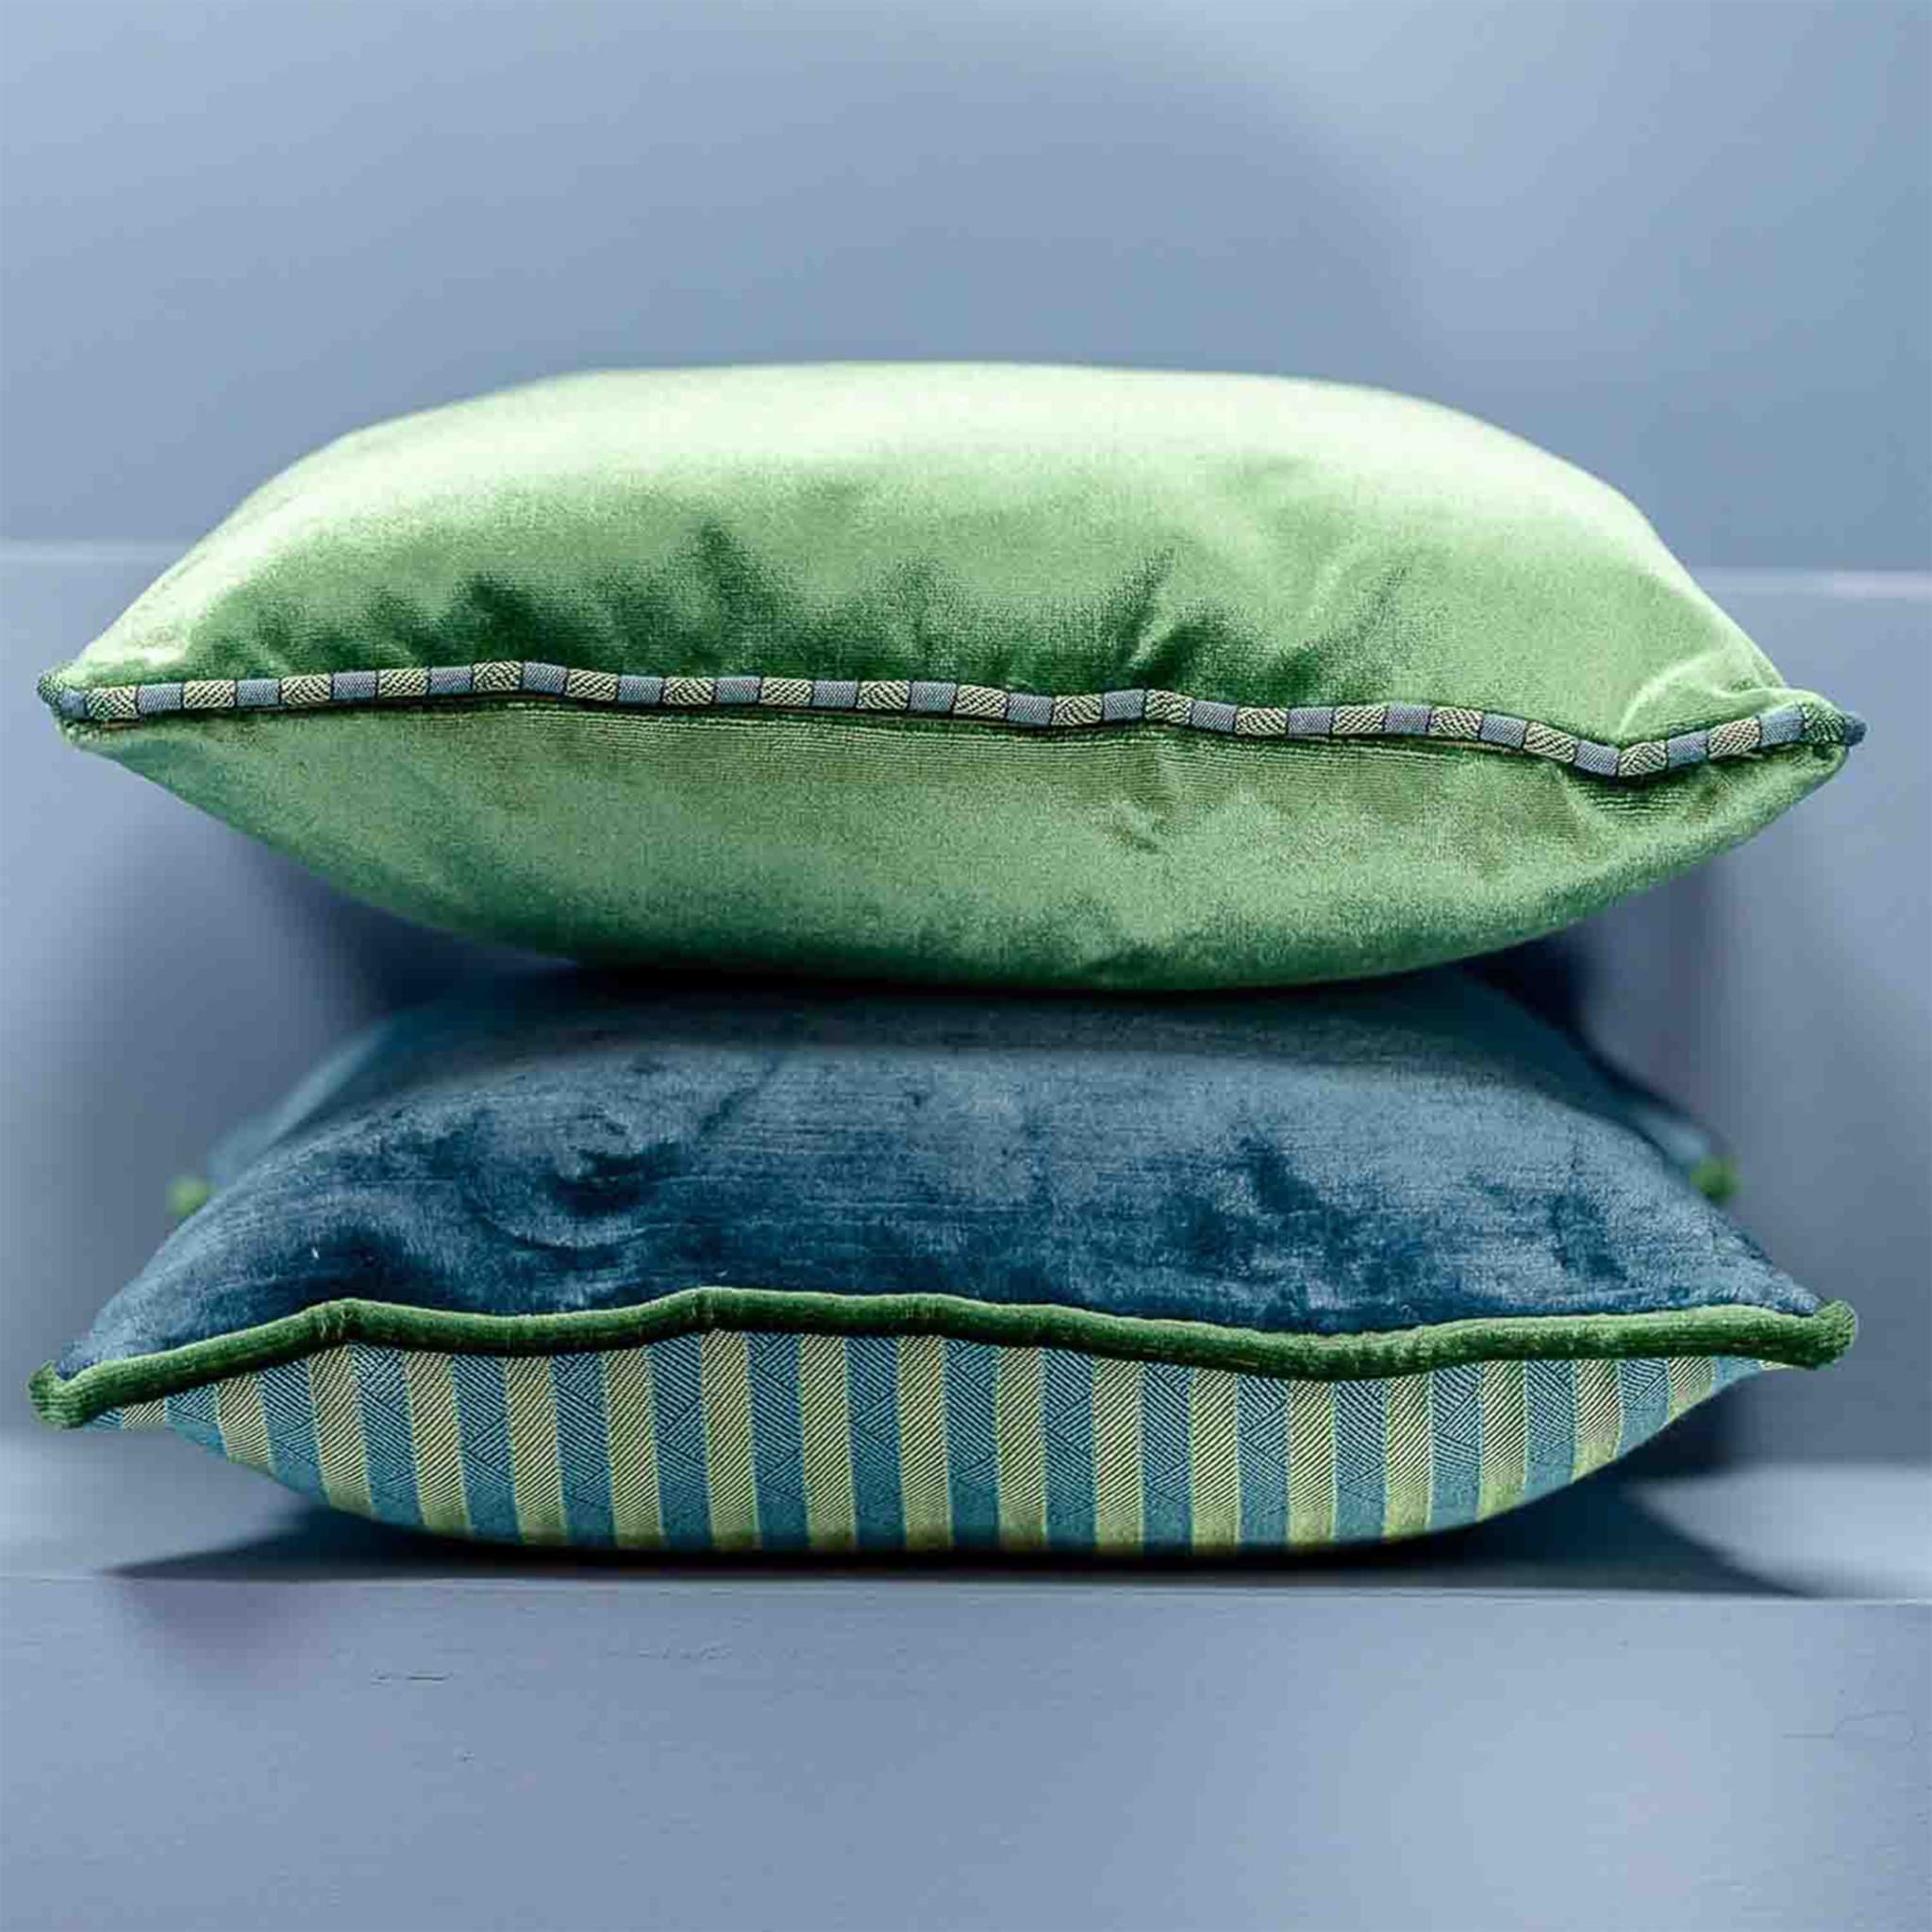 Green Carrè Cushion in striped jacquard fabric - Alternative view 3